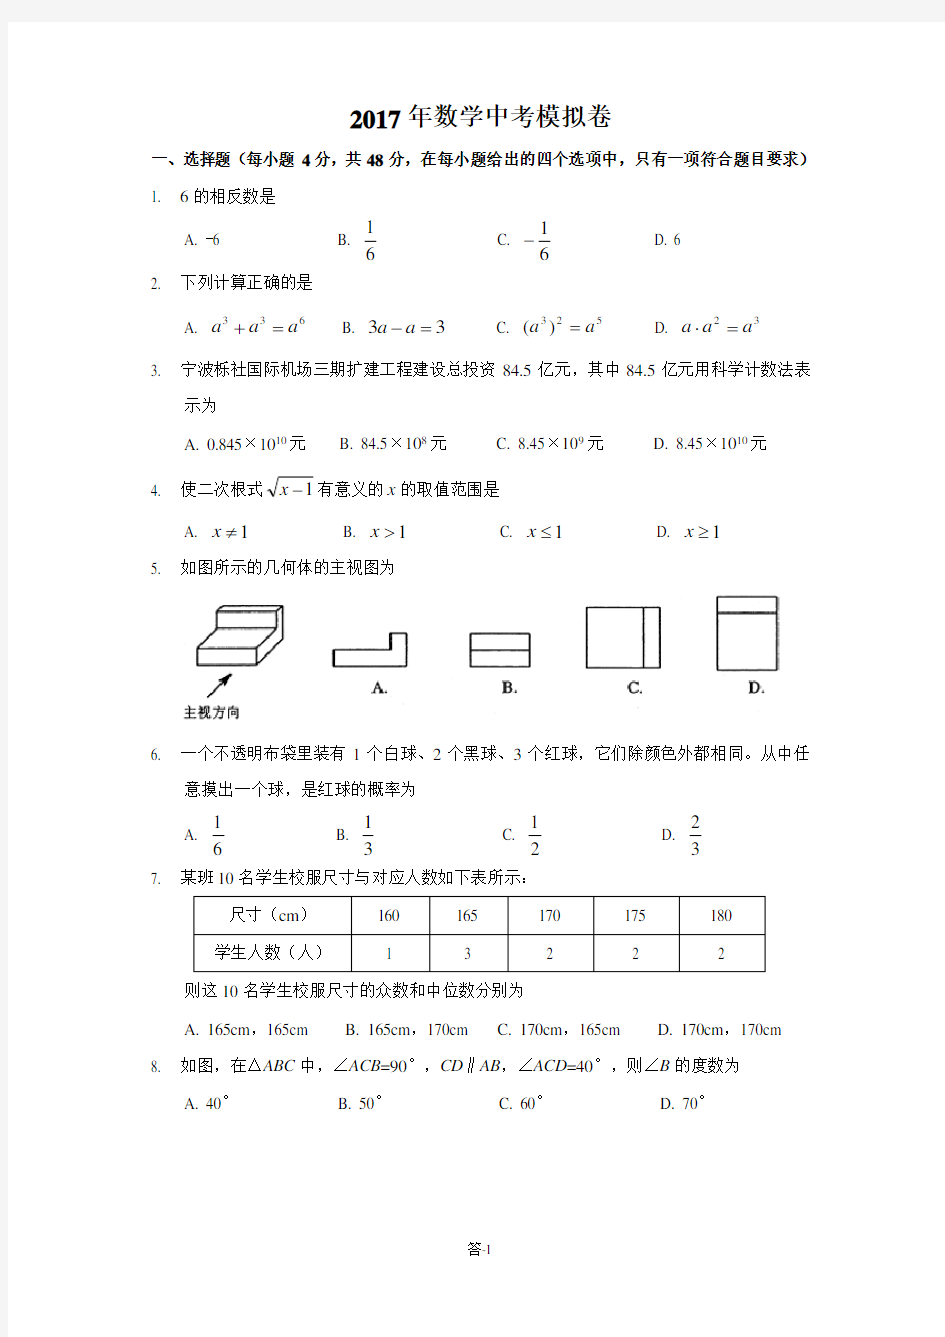 (完整版)2017年浙江省中考数学模拟试题及答案